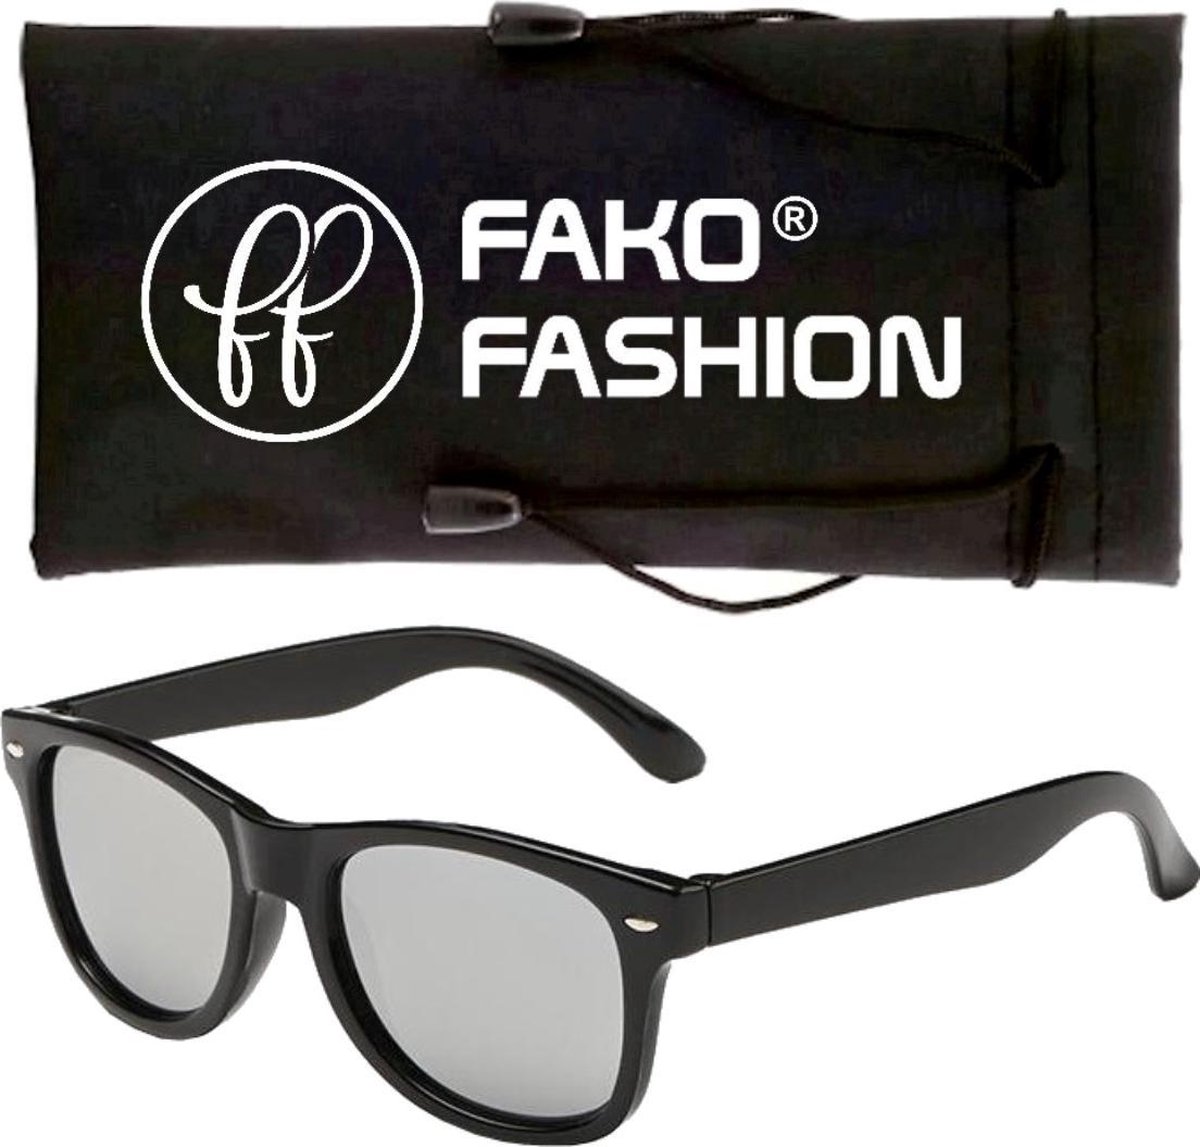 Fako Fashion® - Zonnebril - Kids - Spiegel Zilver